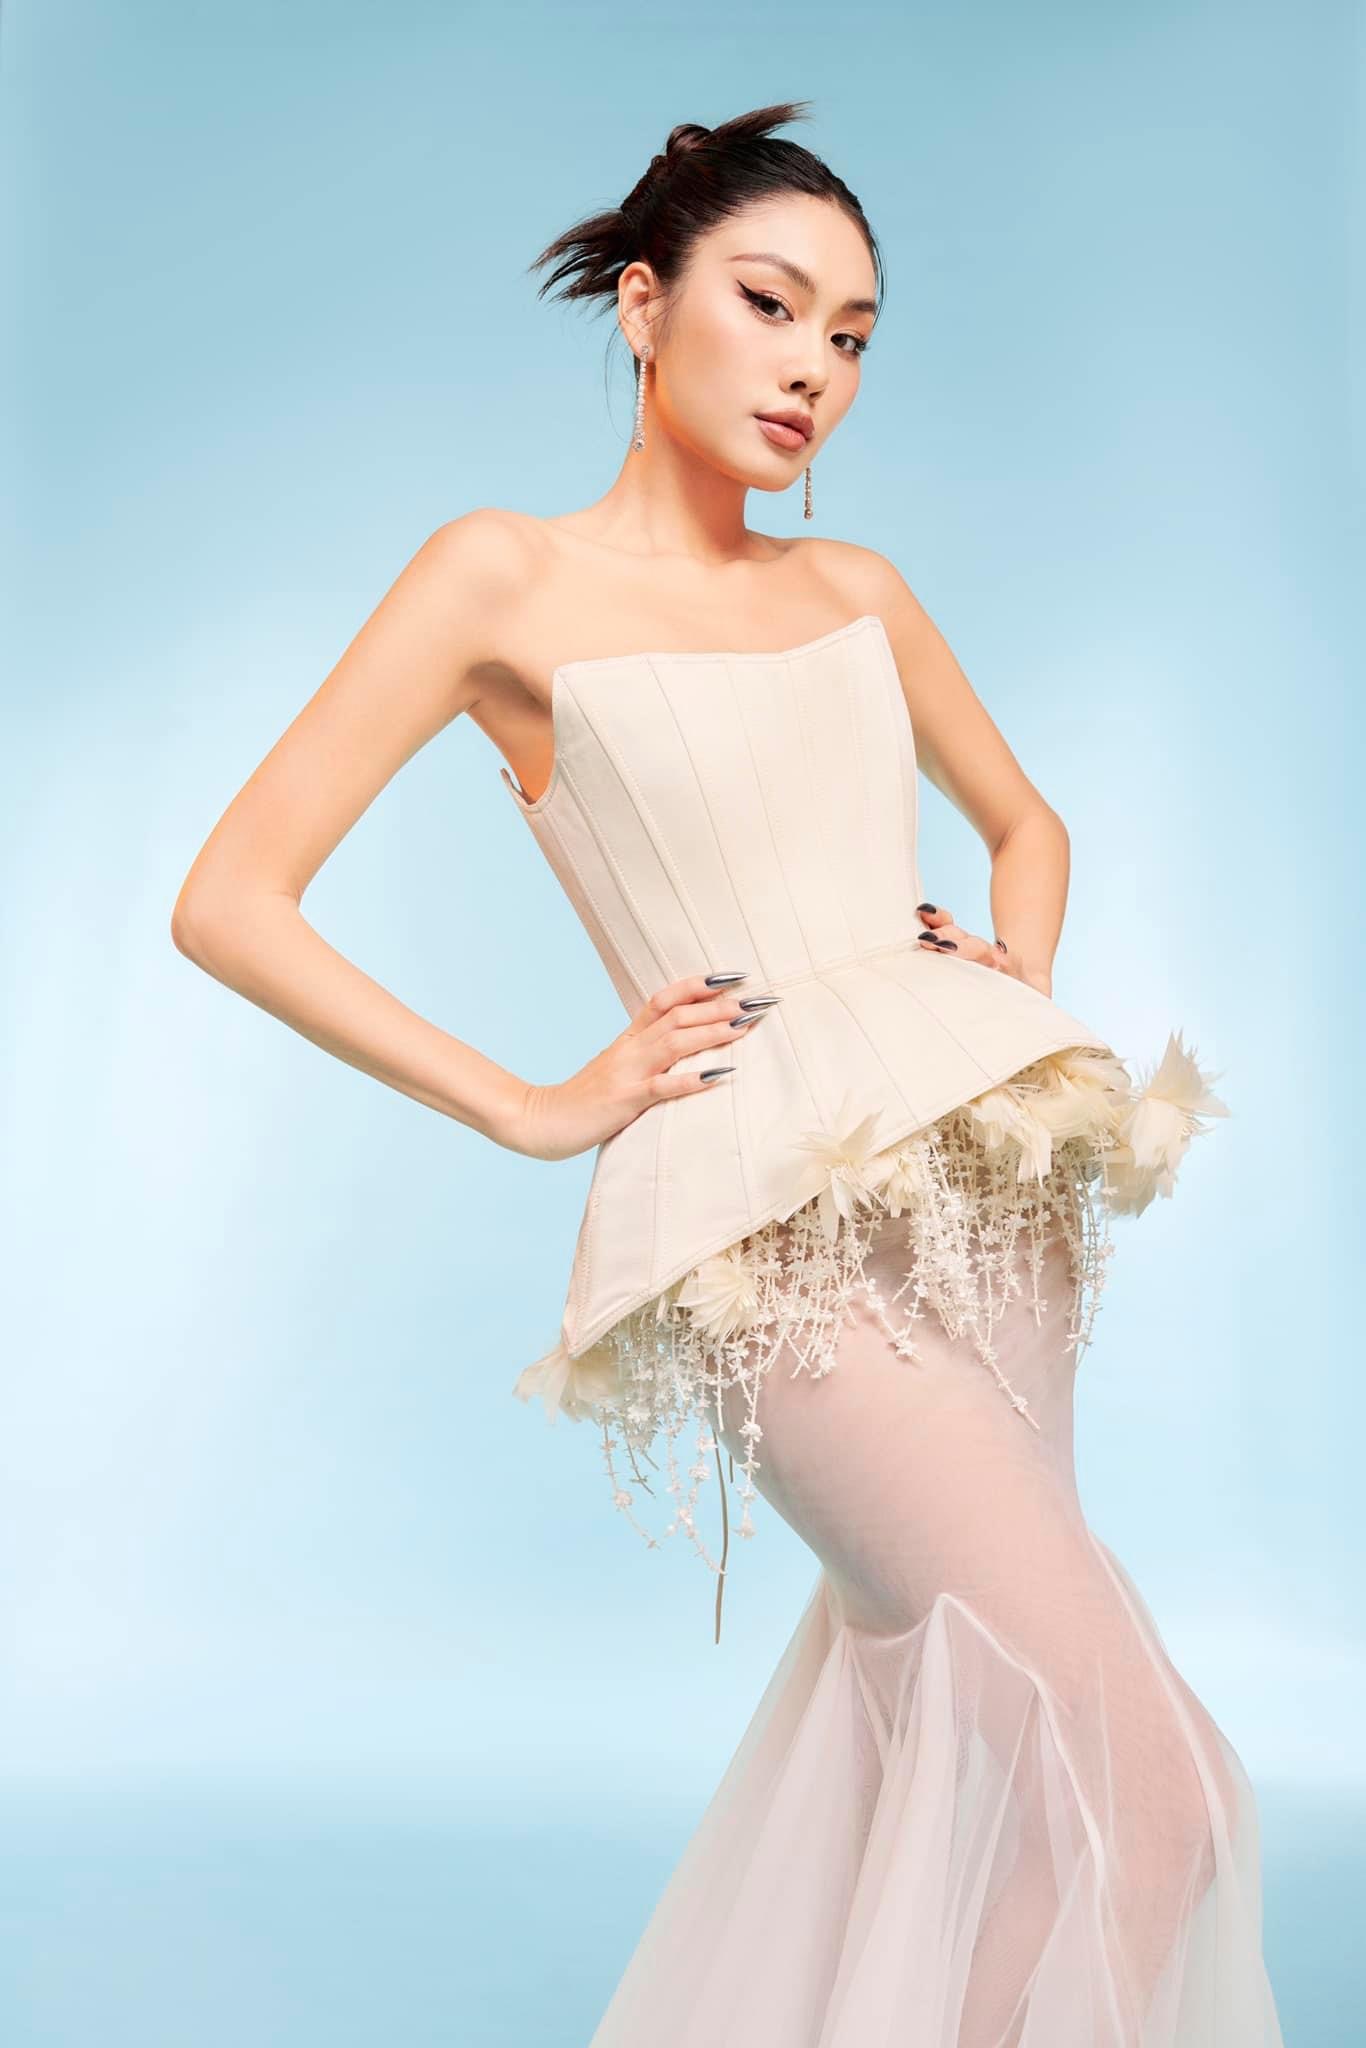 Bộ 3 Hoa hậu Hoàn vũ cùng nhau khoe sắc ngày Tết với sắc trắng trang nhã - ảnh 3